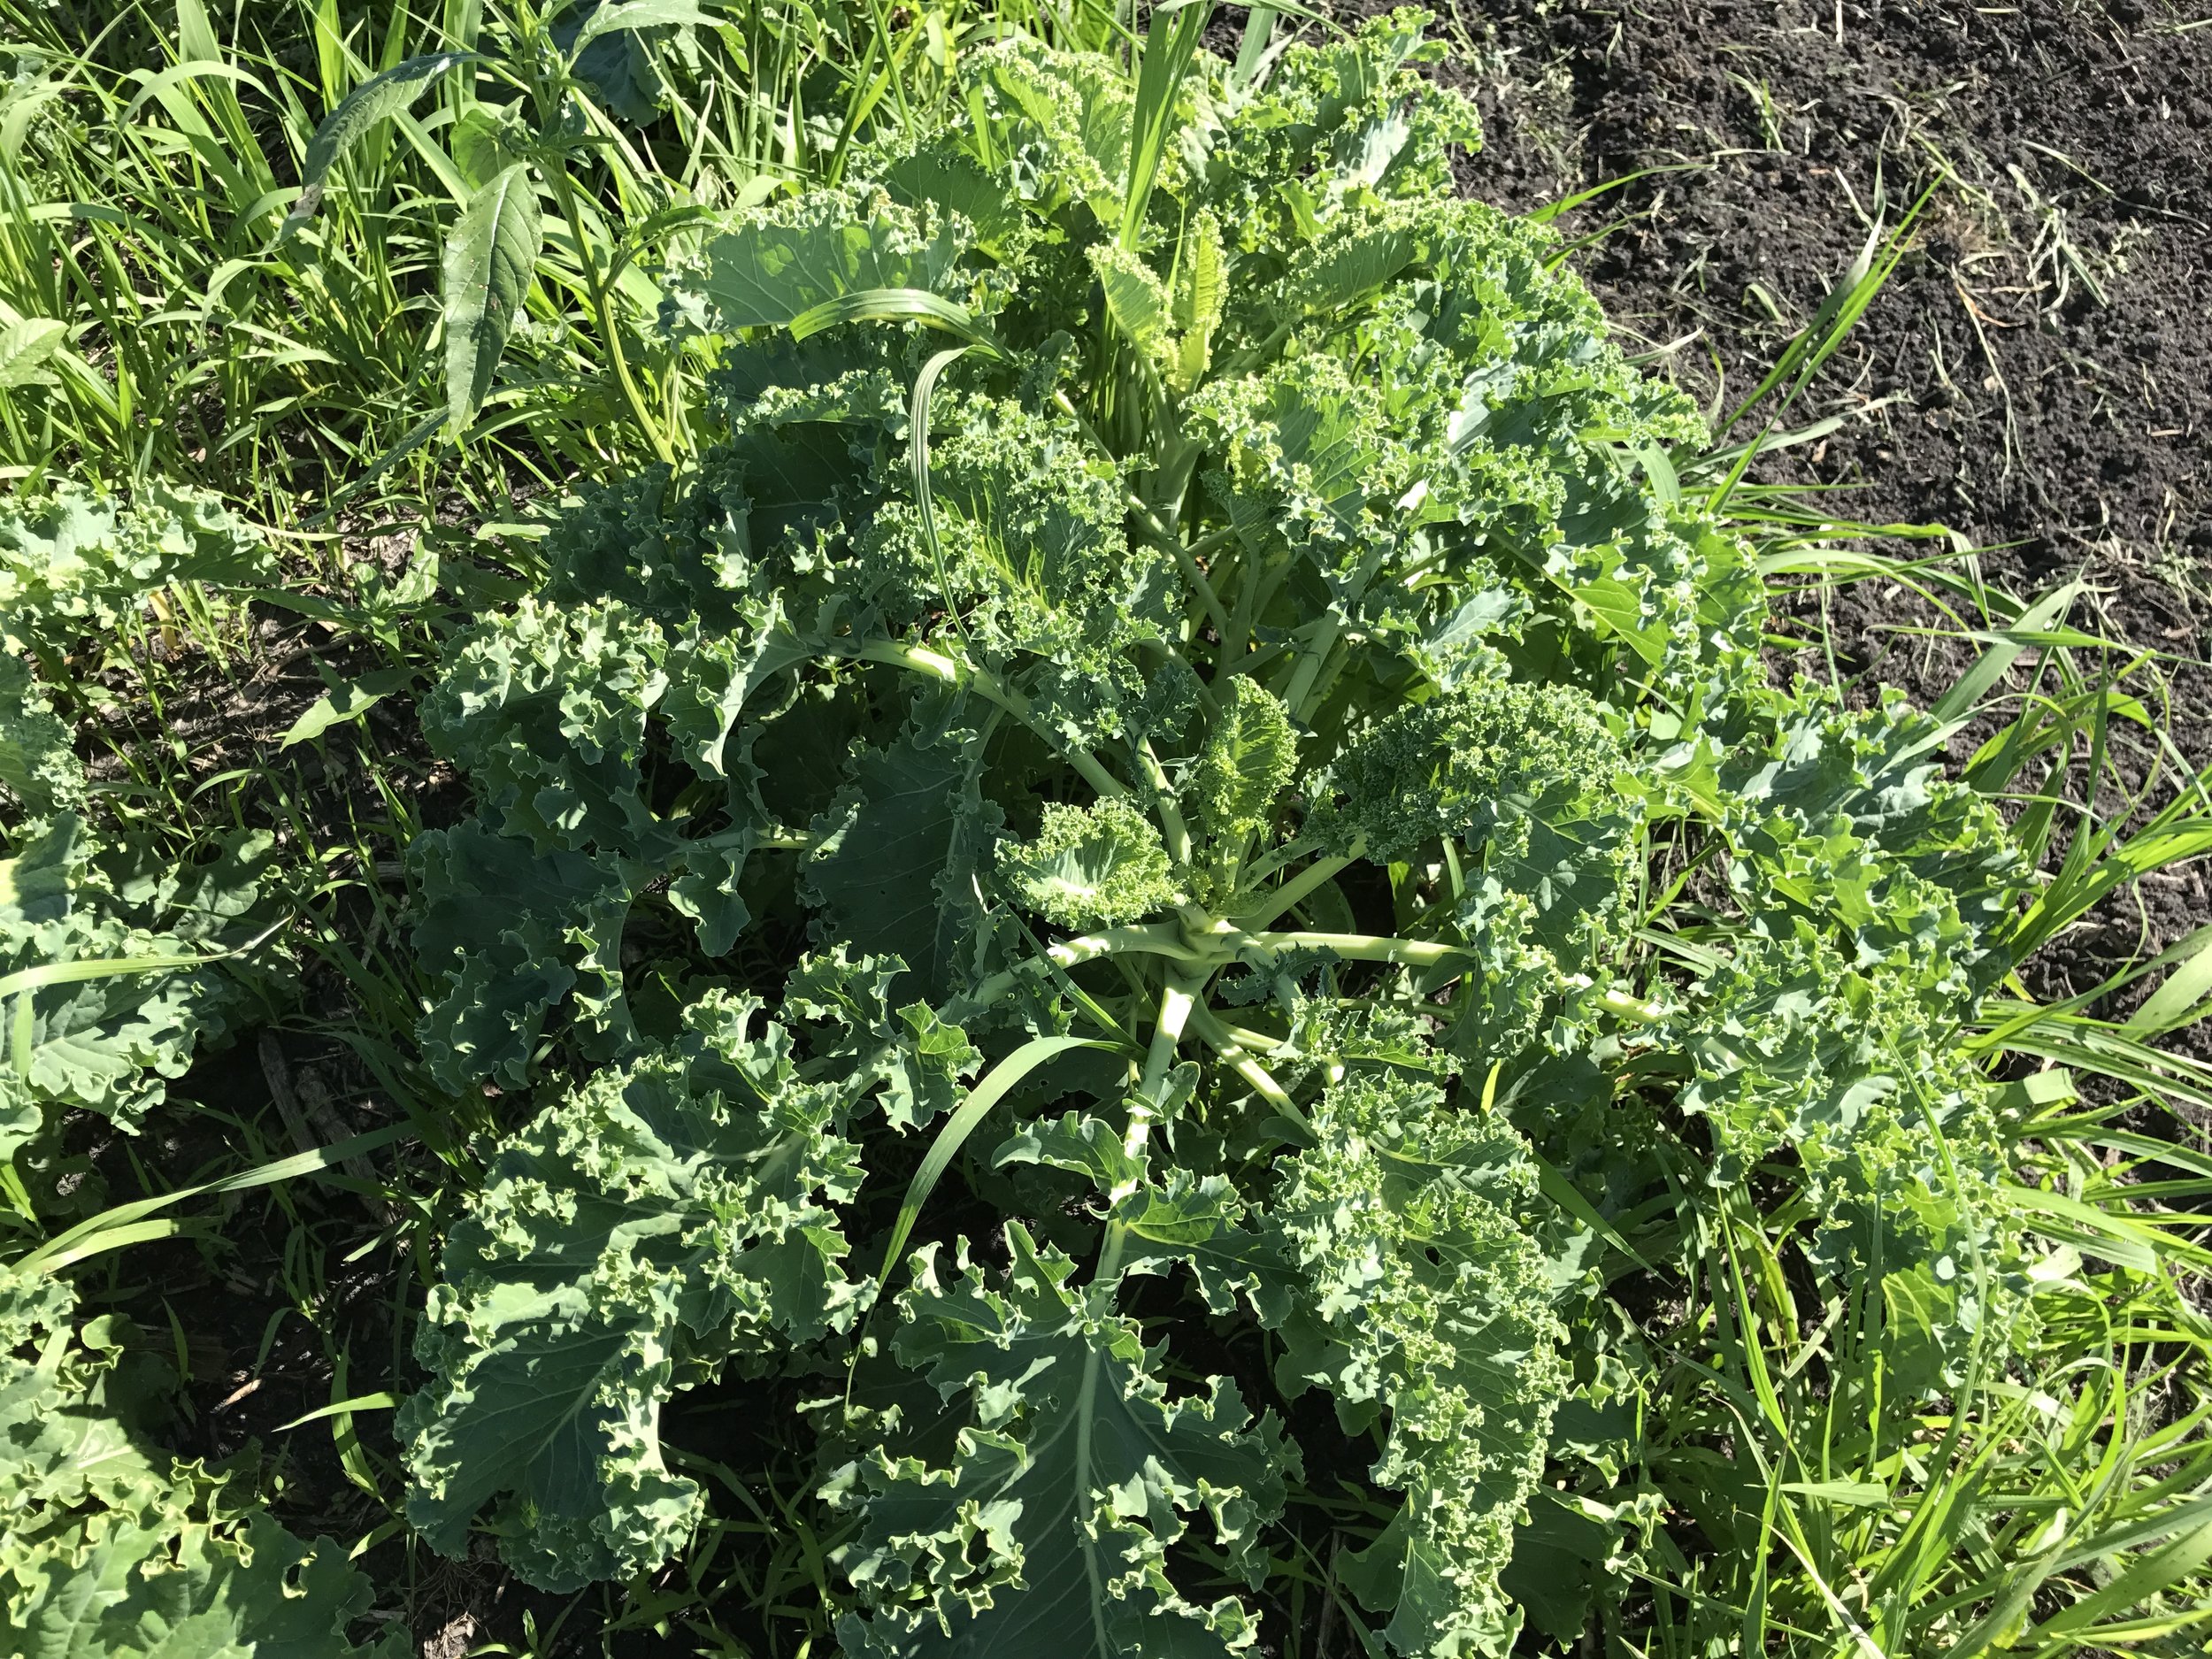  Kale is looking good! 